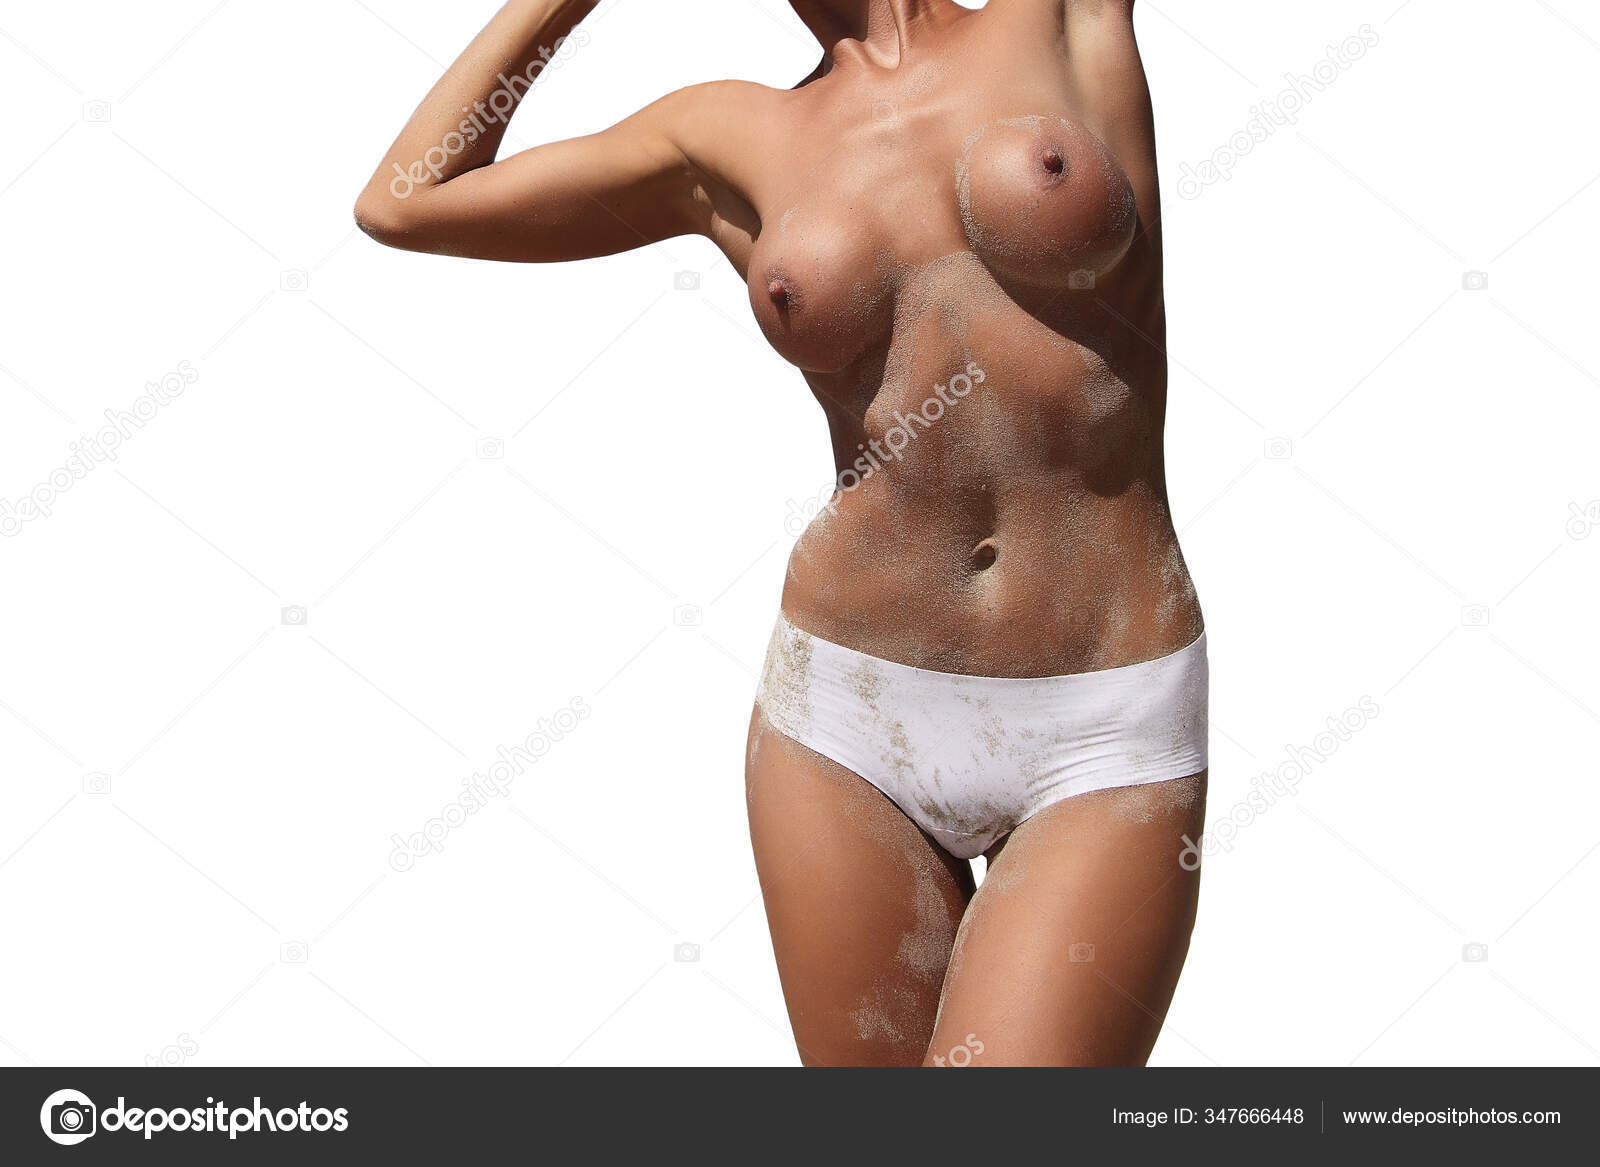 https://st3n.depositphotos.com/2970081/34766/i/1600/depositphotos_347666448-stock-photo-young-sexy-girl-nude-beautiful.jpg